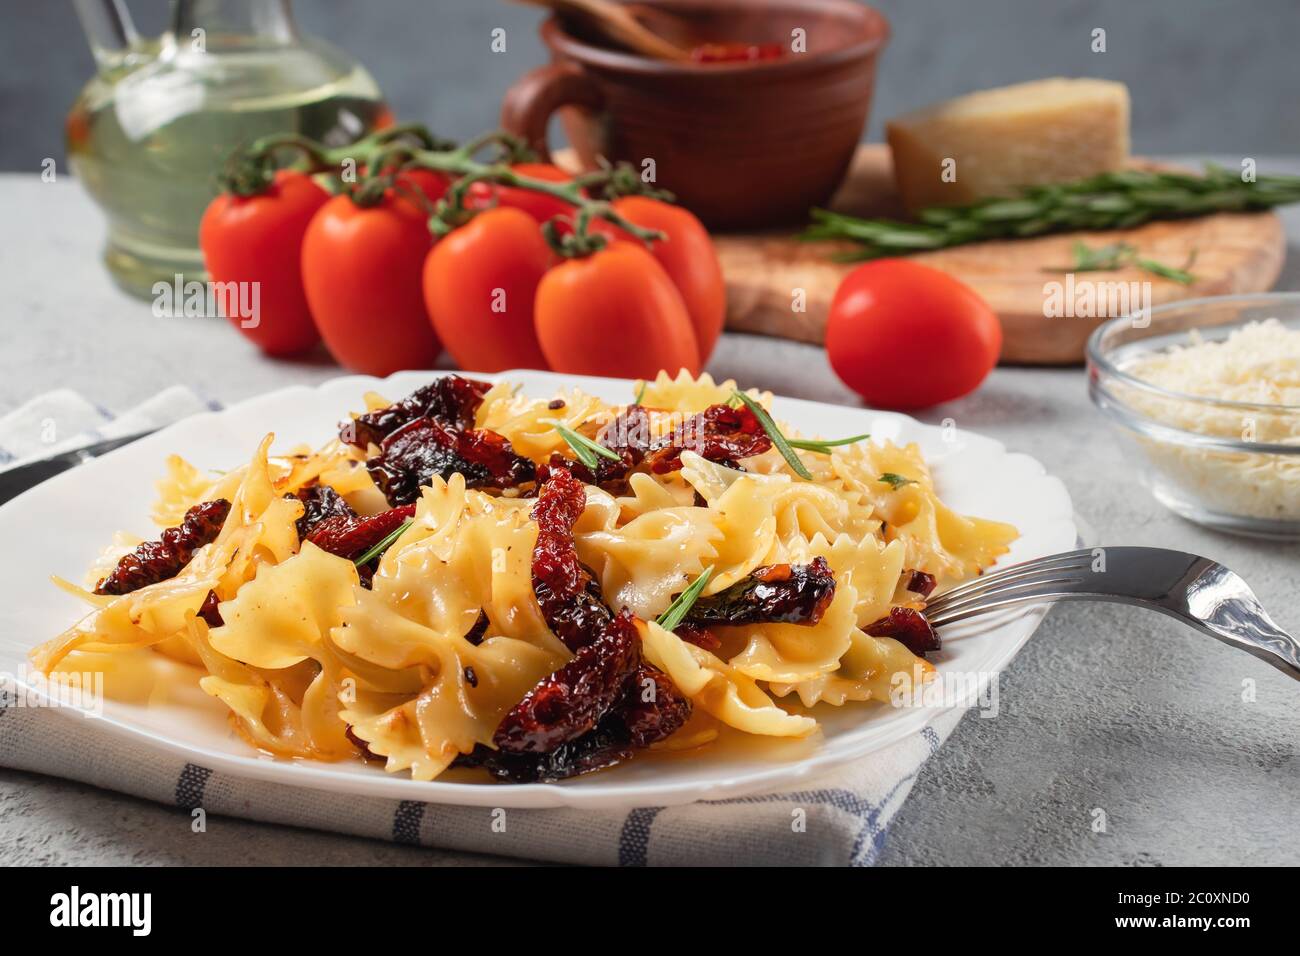 Pâtes avec tomates séchées et parmesan dans une assiette blanche sur la table. Cuisine italienne, ingrédients et plat fini. Banque D'Images